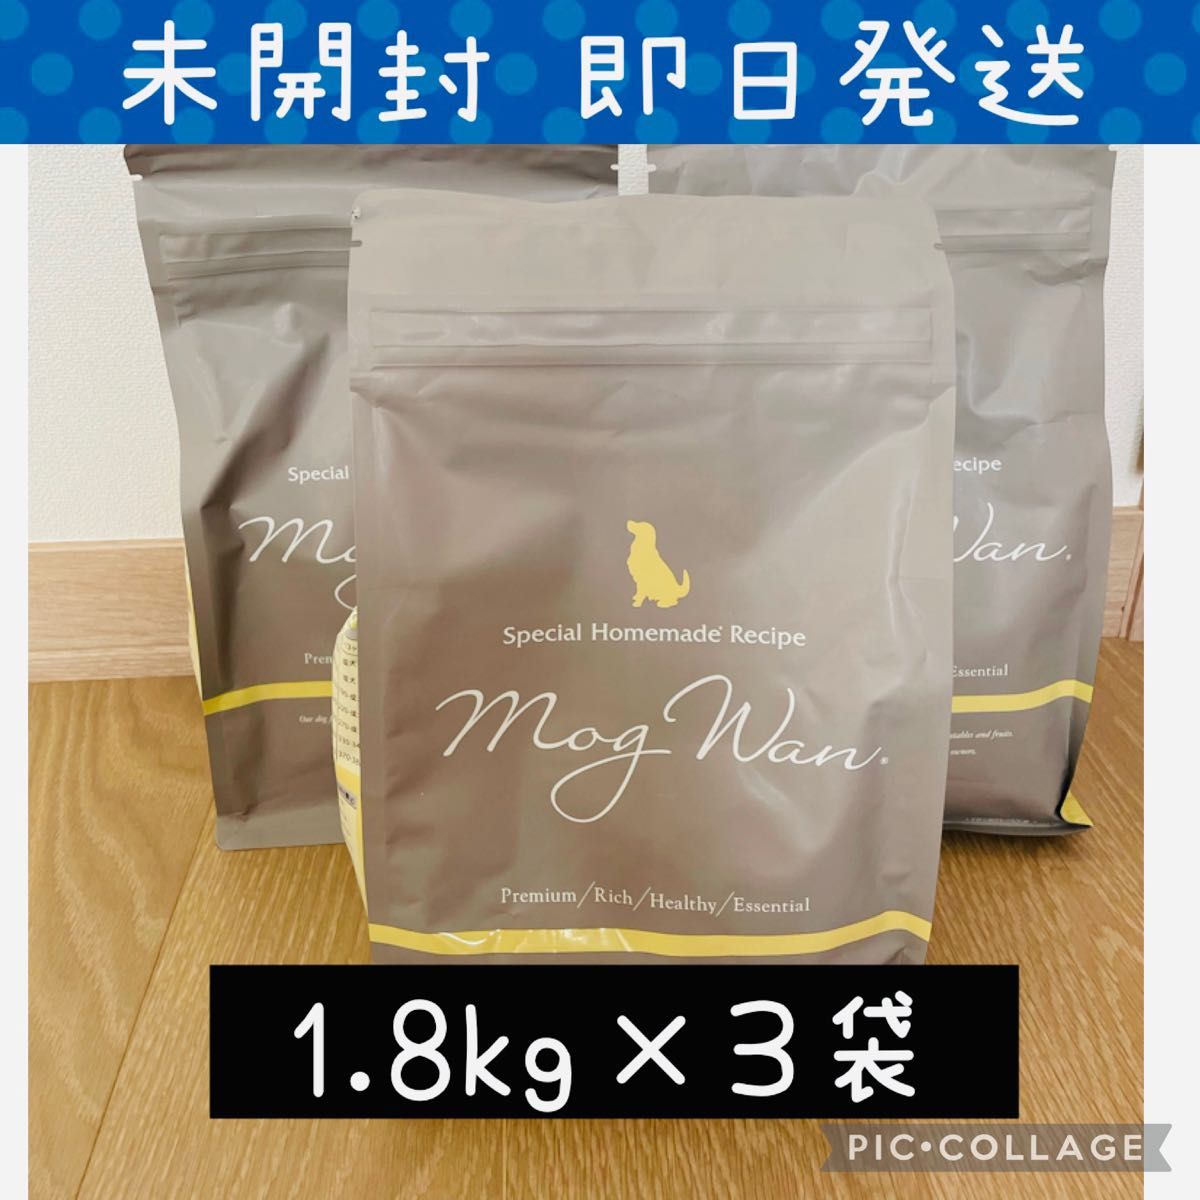 モグワン ドッグフード 1.8kg×3袋 abitur.gnesin-academy.ru